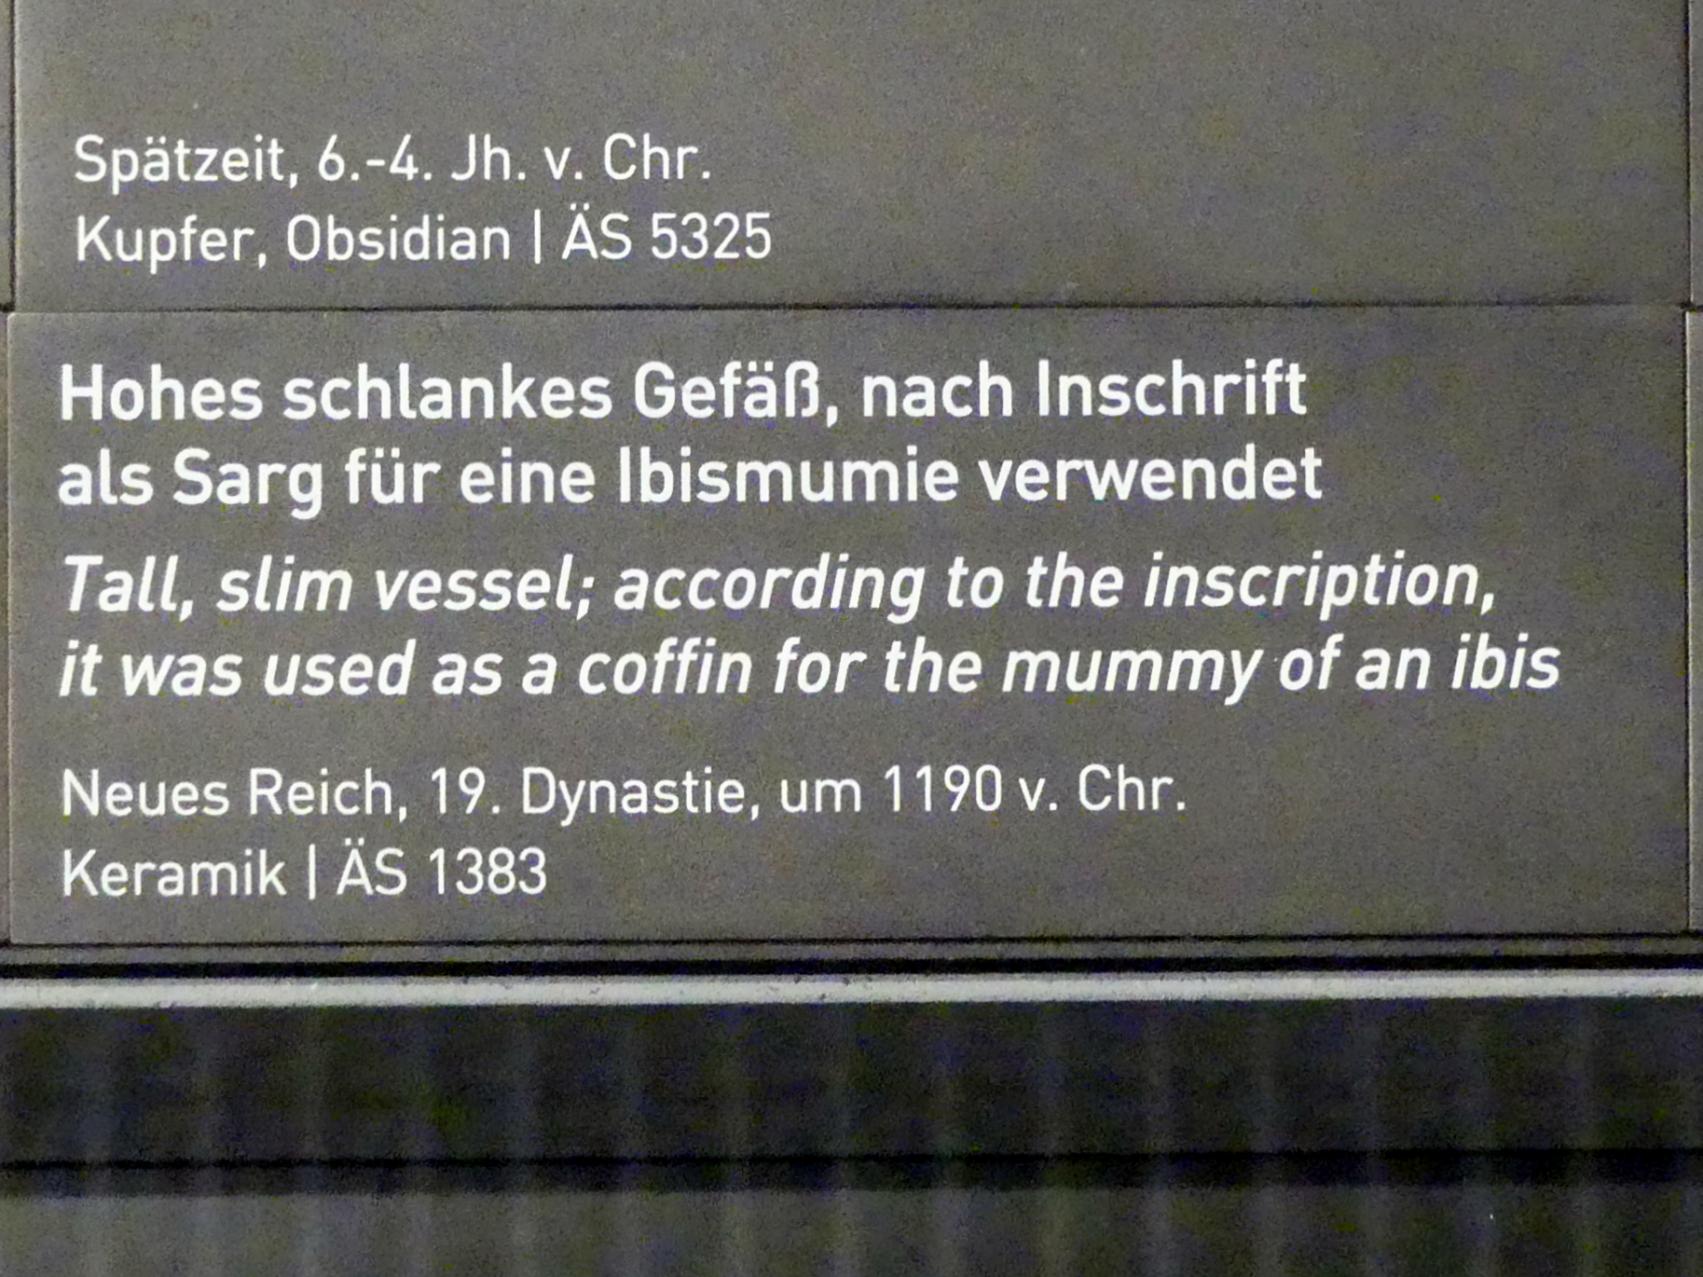 Hohes schlankes Gefäß, nach Inschrift als Sarg für eine Ibismumie verwendet, 19. Dynastie, 953 - 887 v. Chr., 1190 v. Chr., Bild 4/4